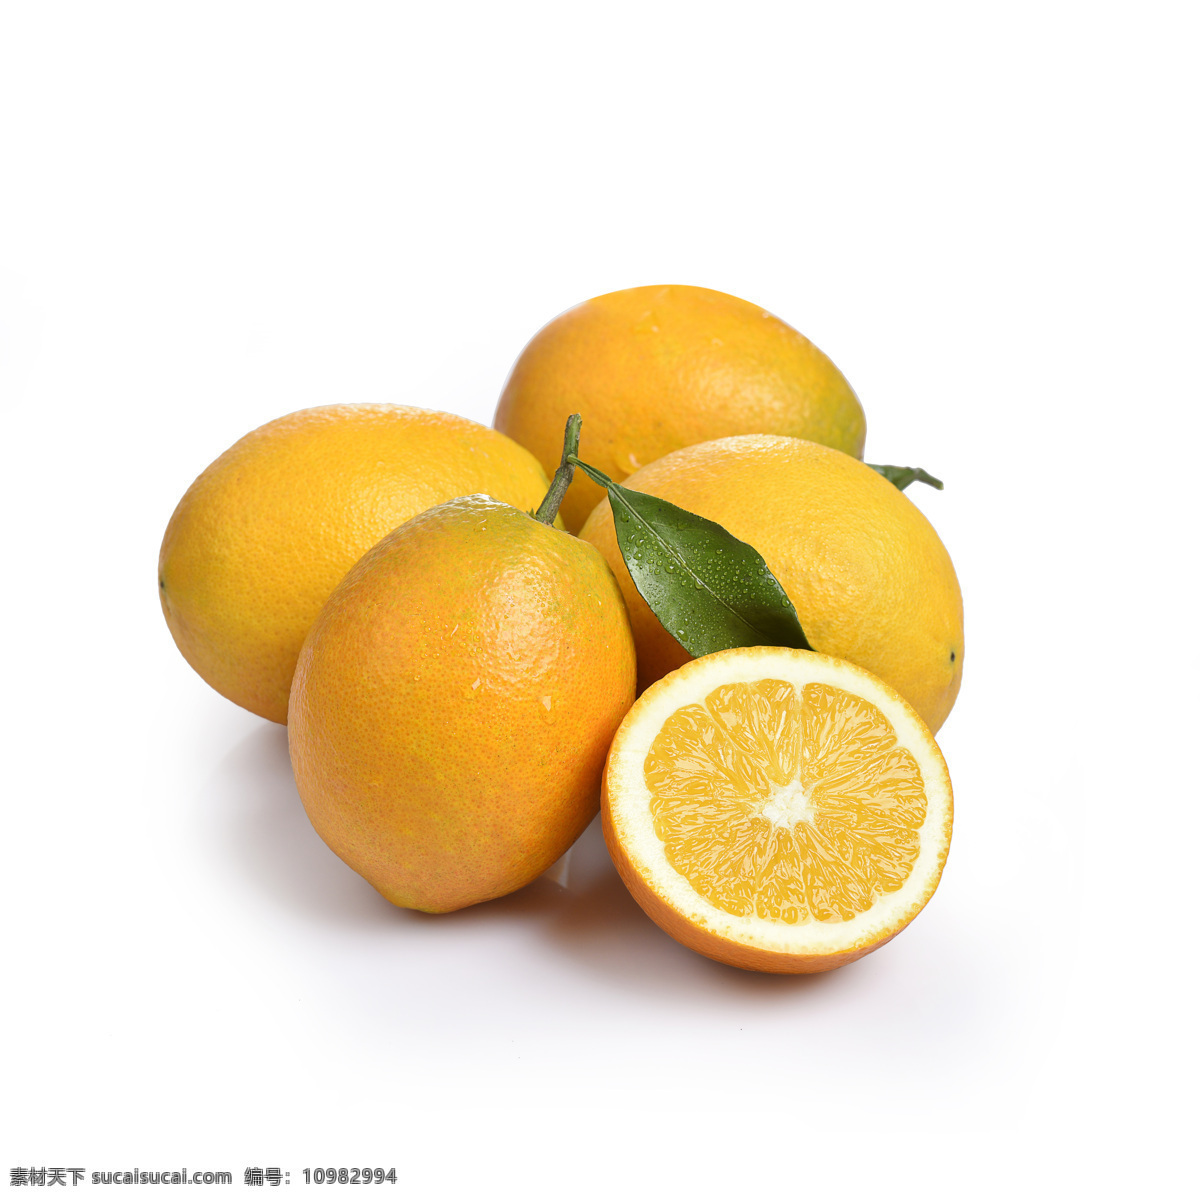 生鲜 赣南 脐橙 摄影图 食品 水果 脐橙橙 蔬菜水果 餐饮美食 传统美食